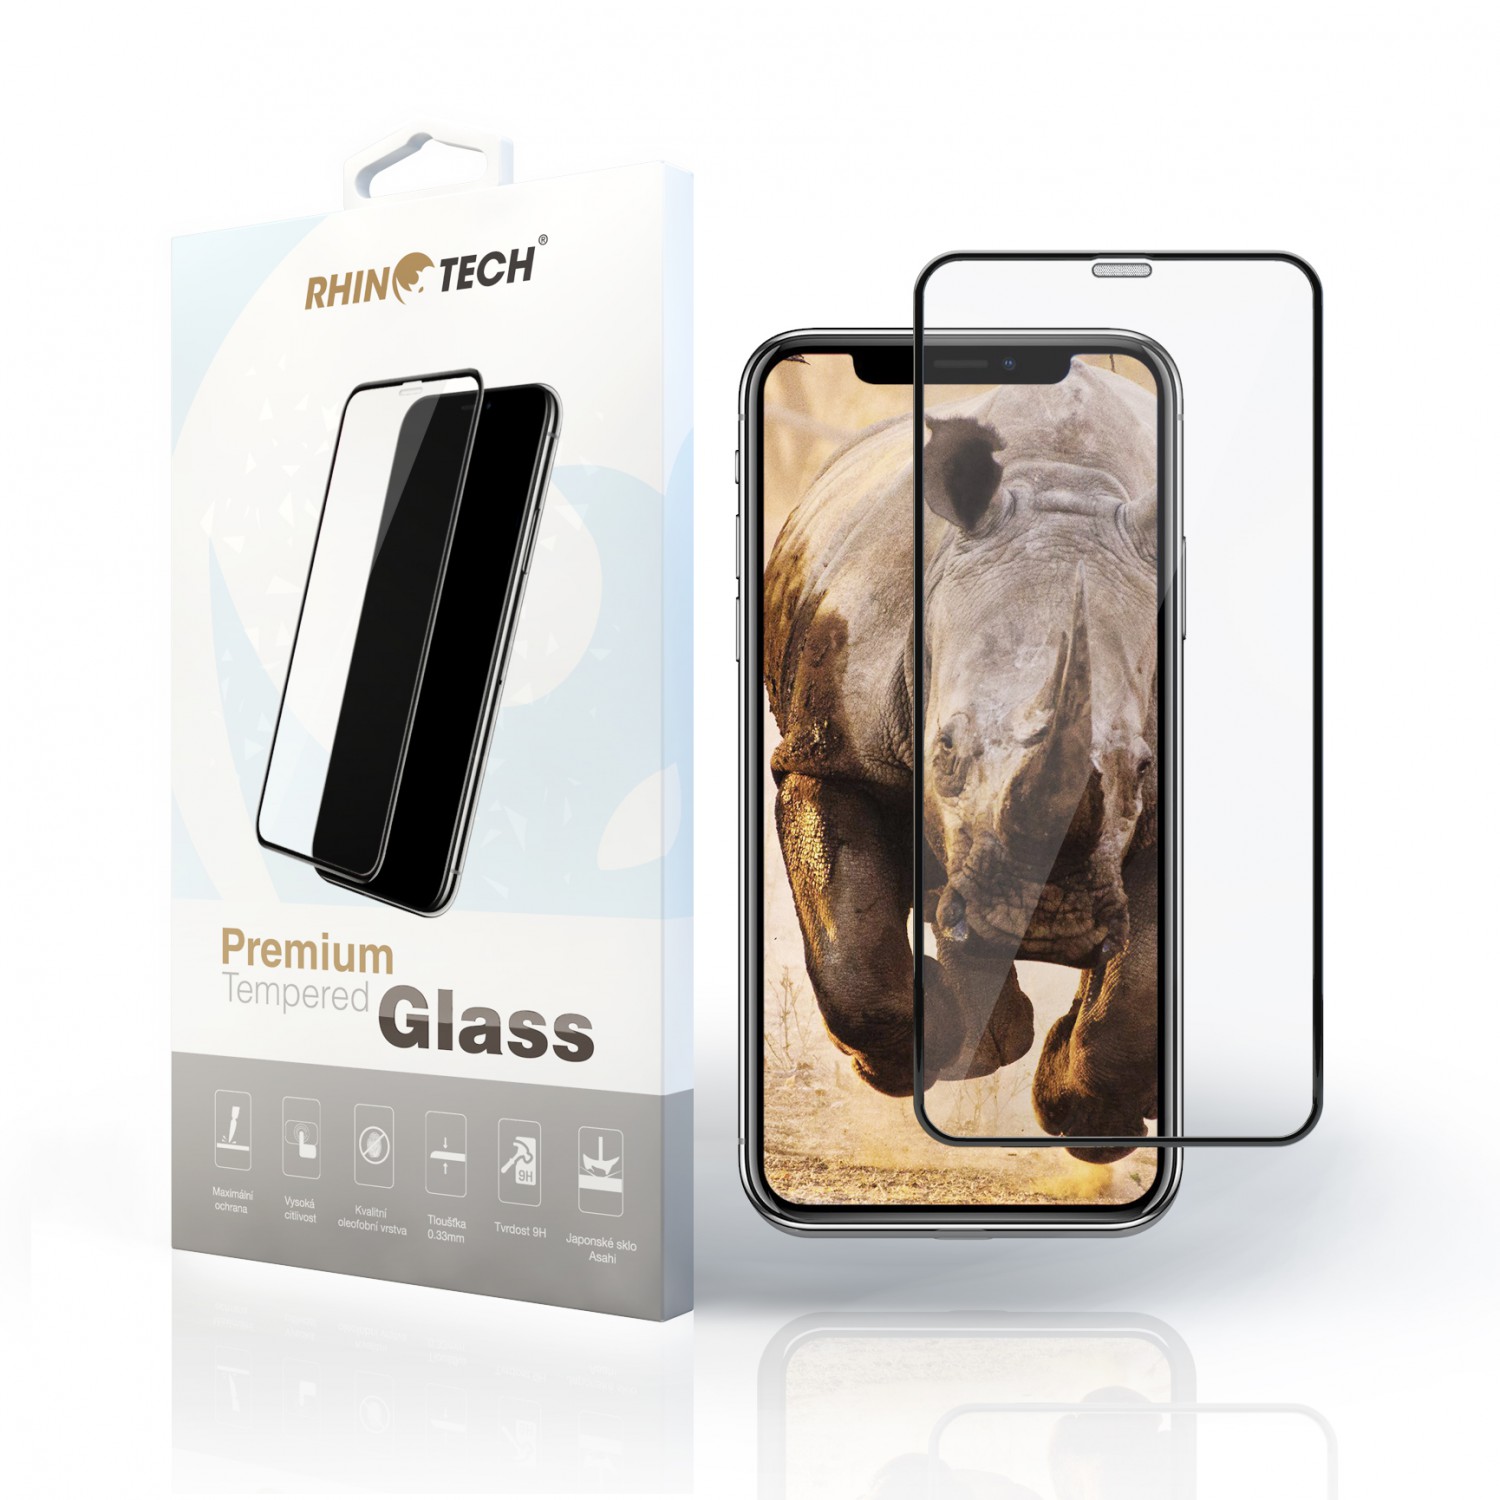 Tvrzené 2.5D sklo Rhinotech pro Xiaomi Redmi Note 4, white